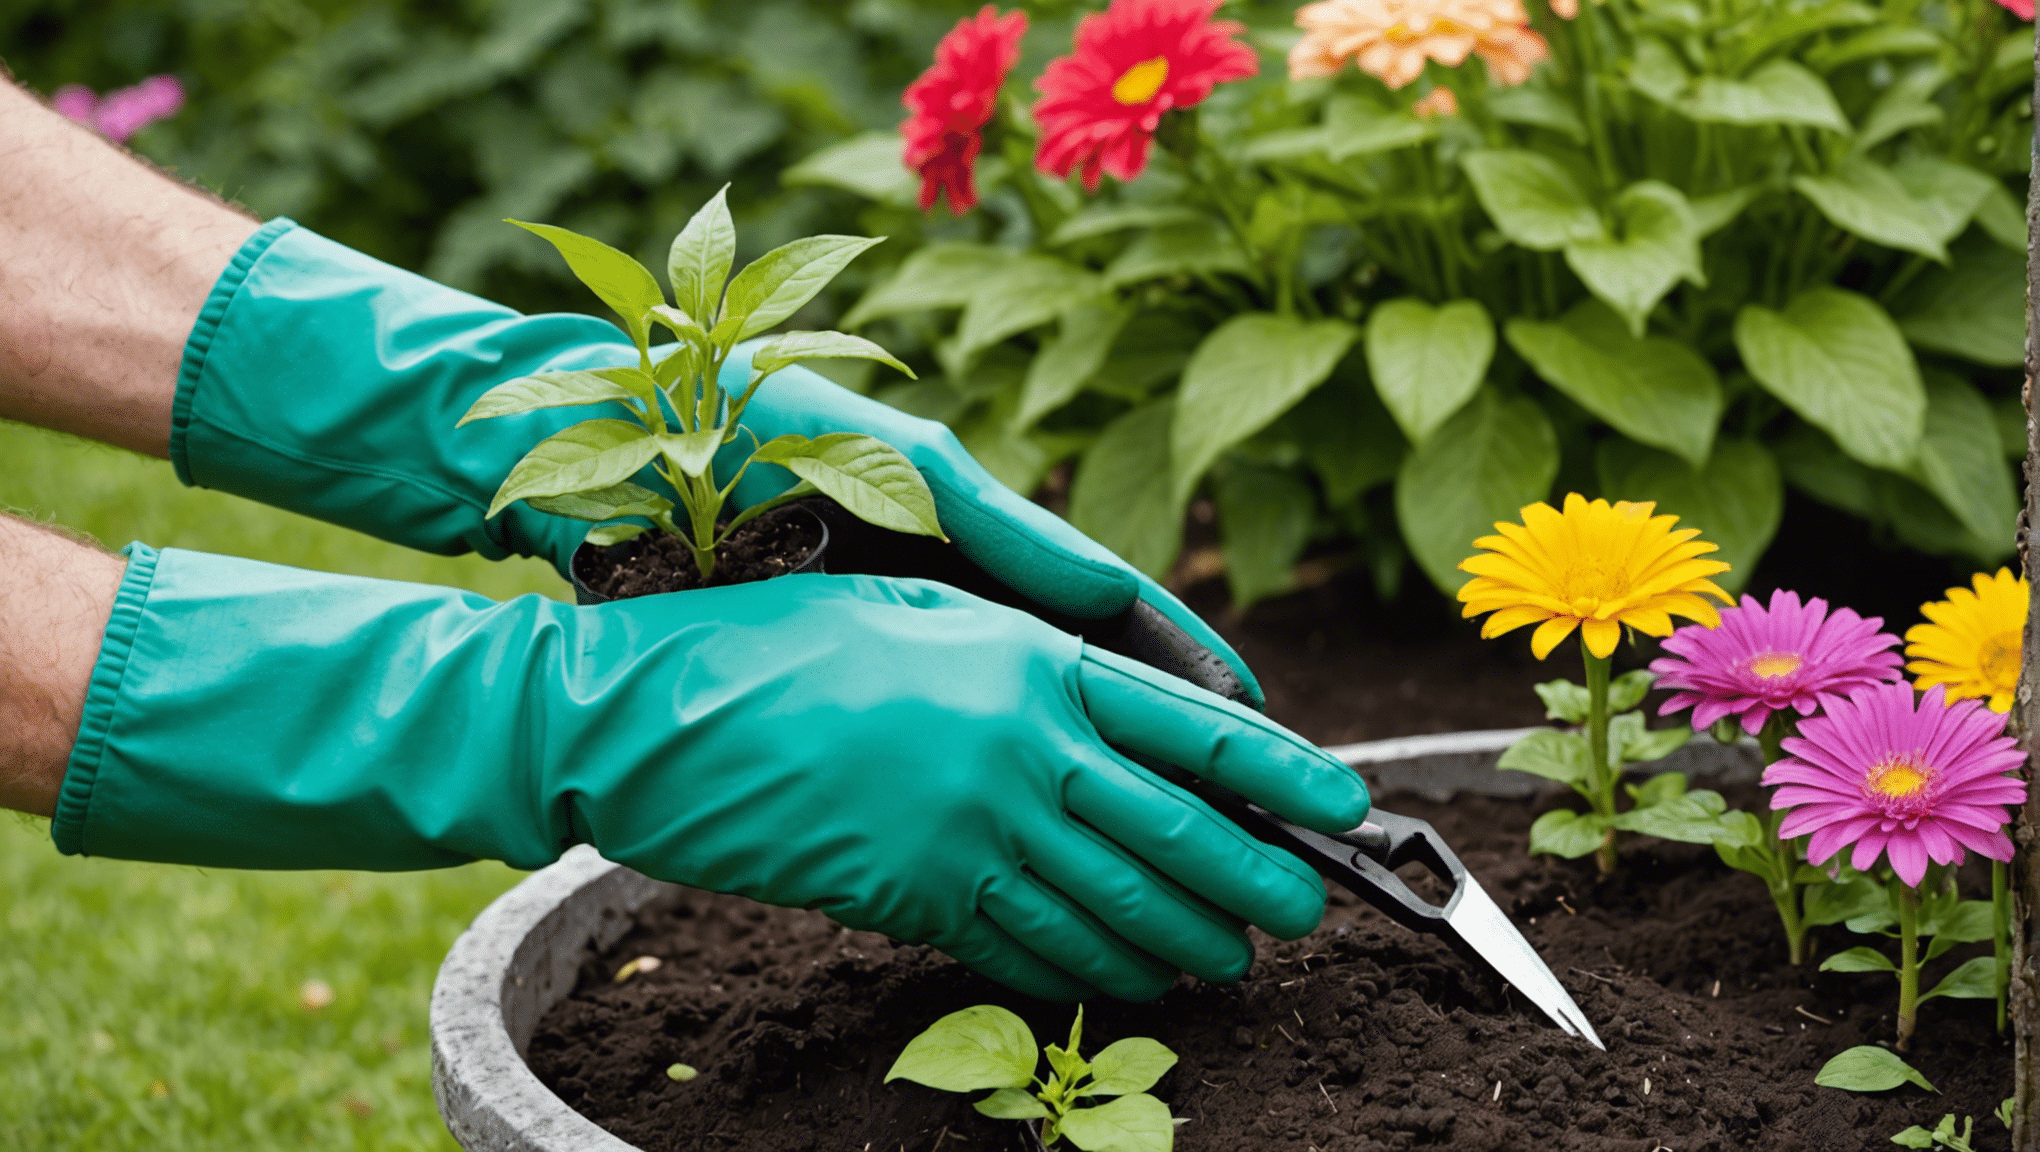 descubra a comodidade das luvas de jardinagem com garras e transforme sua experiência de jardinagem com facilidade e eficiência.